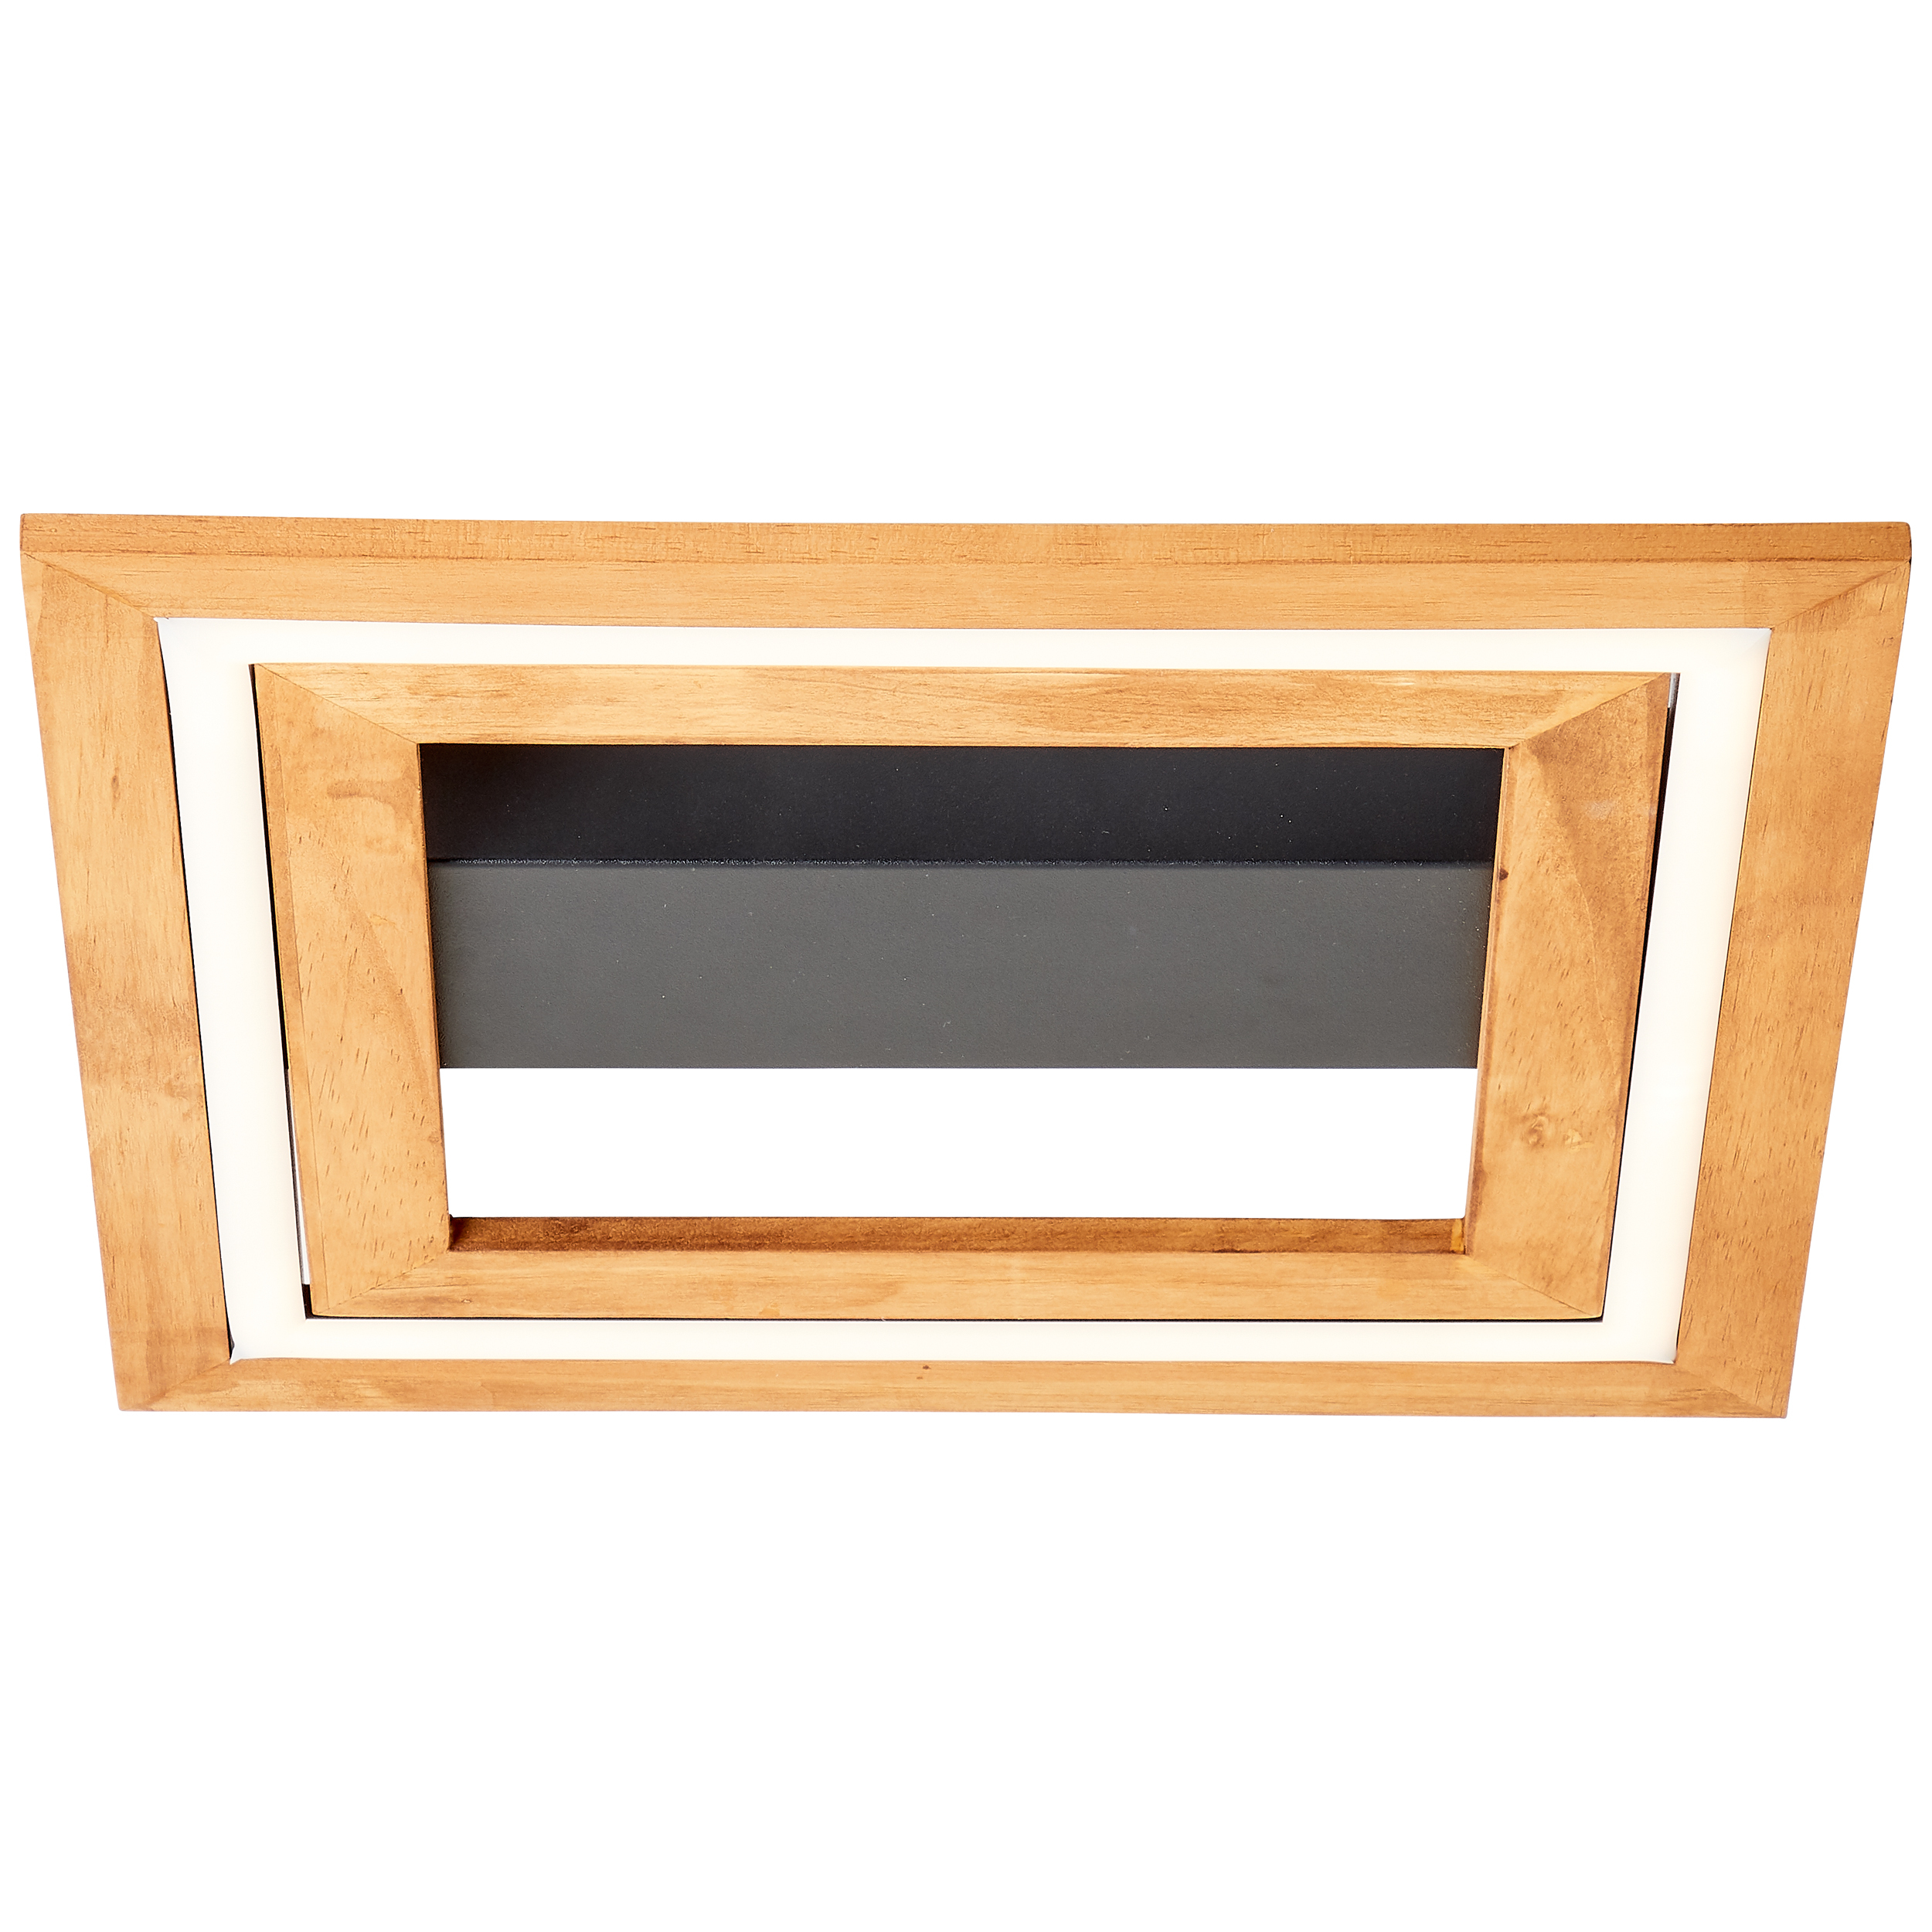 LED Rhea ceiling black/wood | light 35x35cm G99747/76